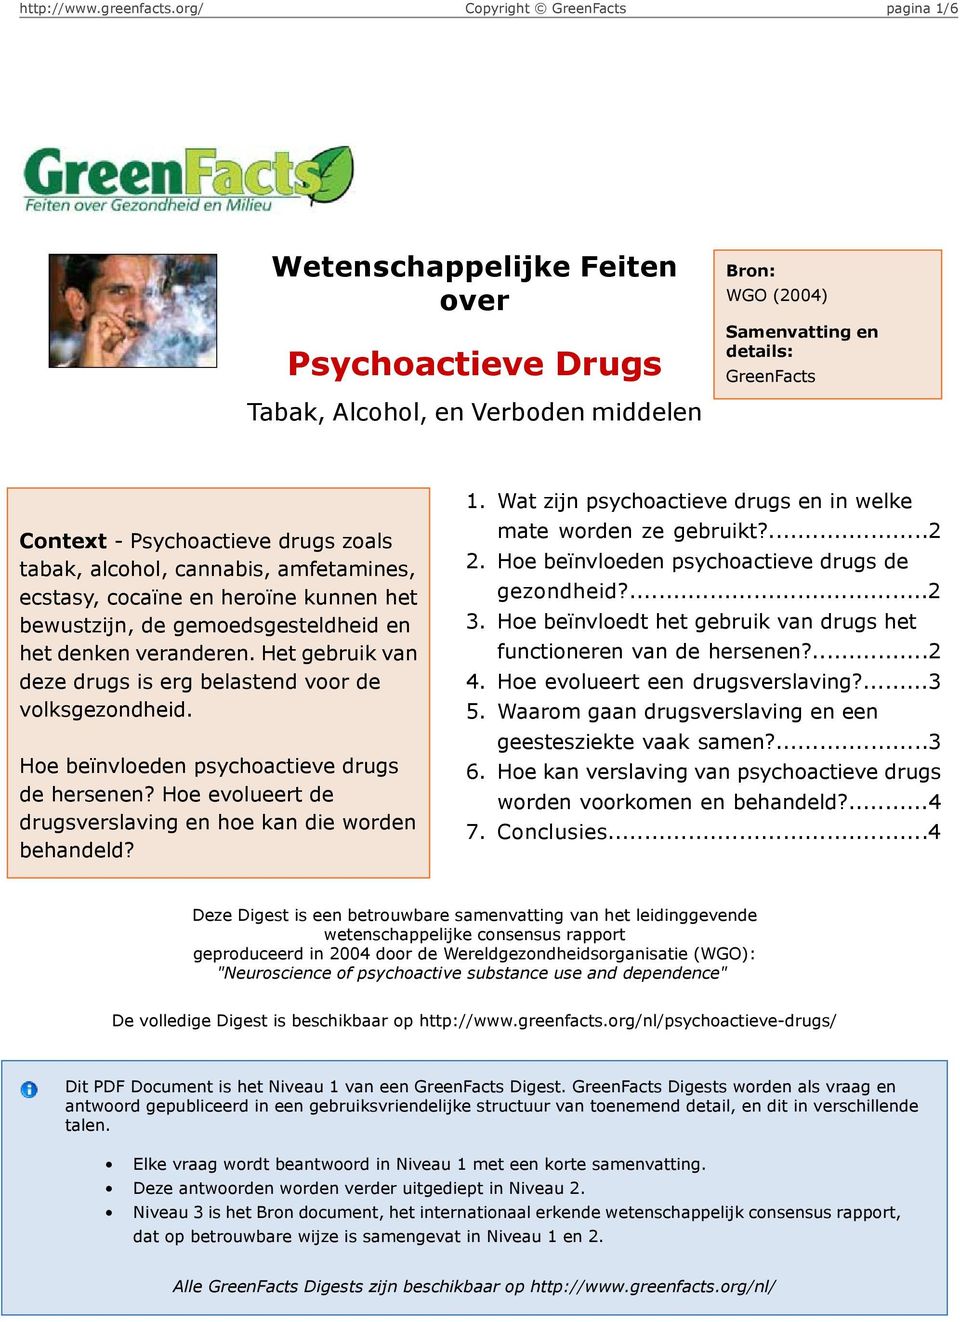 Hoe beïnvloeden psychoactieve drugs de hersenen? Hoe evolueert de drugsverslaving en hoe kan die worden behandeld? 1. 2. 3. 4. 5. 6. 7.